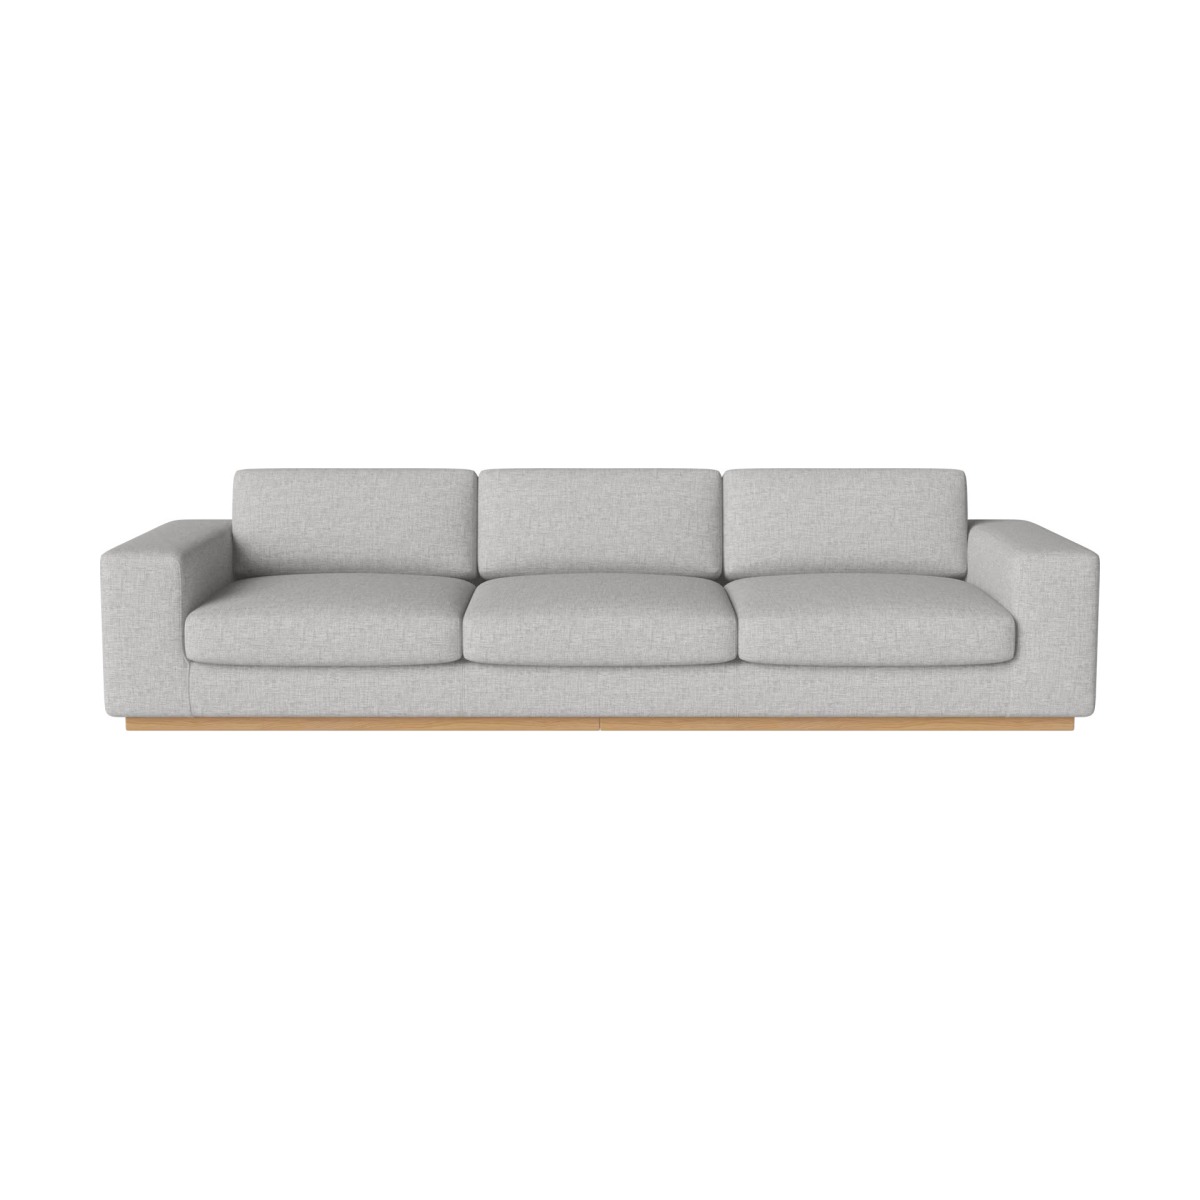 BOLIA Sepia 4 seater sofa